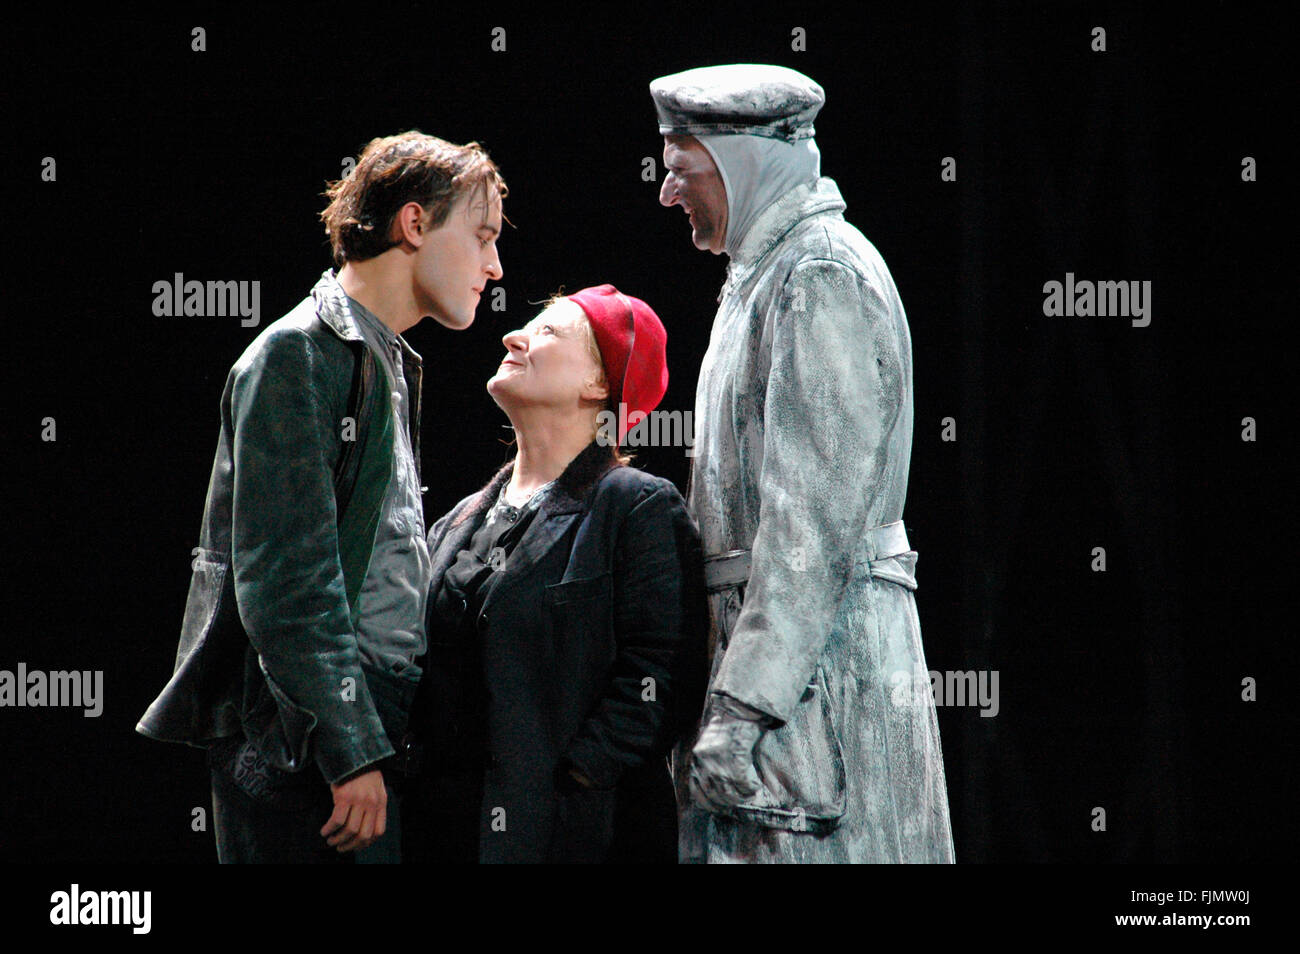 Michael Rothmann, Carmen-Maja Antoni u.a. - Theaterproduktion 'Mproferire coraggio und ihre Kinder" (von Bertolt Brecht, Regie: Claus Foto Stock